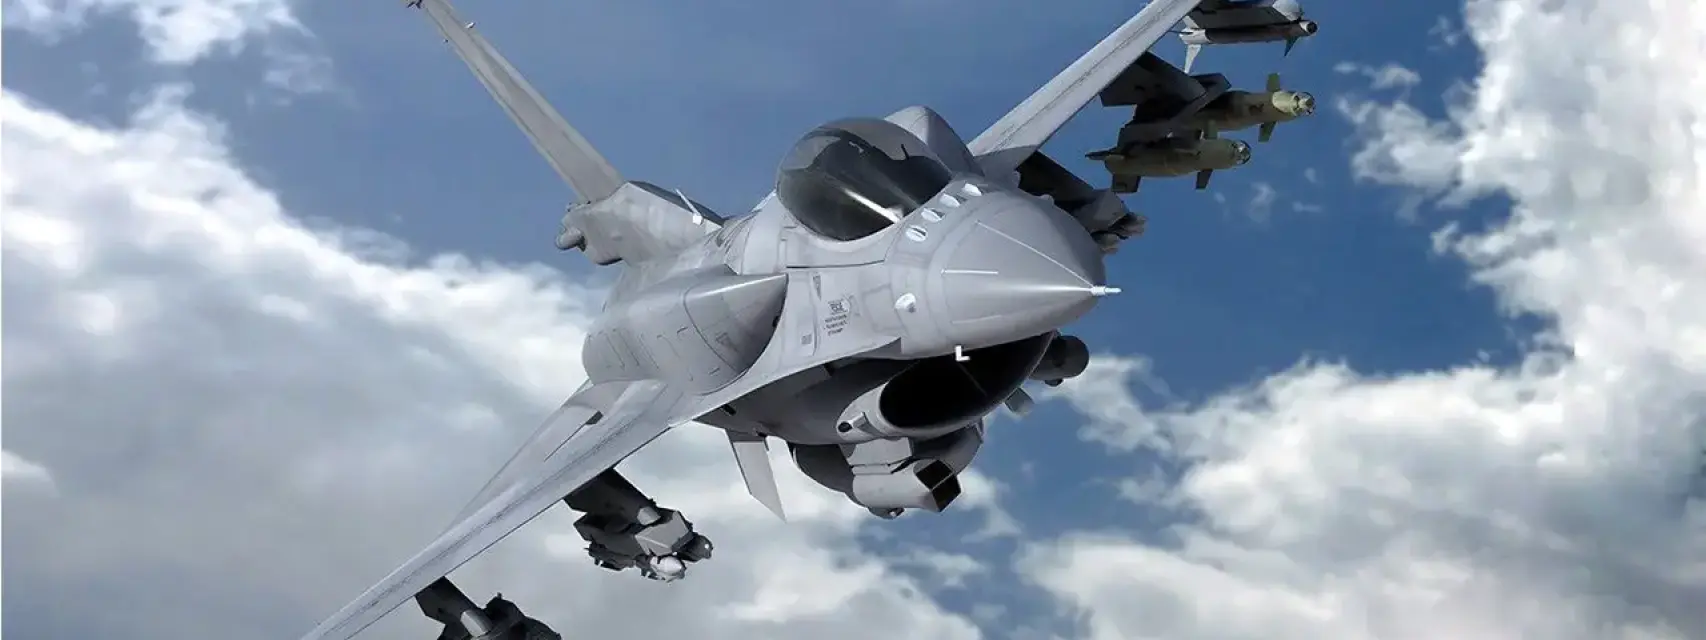 F-16 Viper, el mismo modelo que recibirá Marruecos